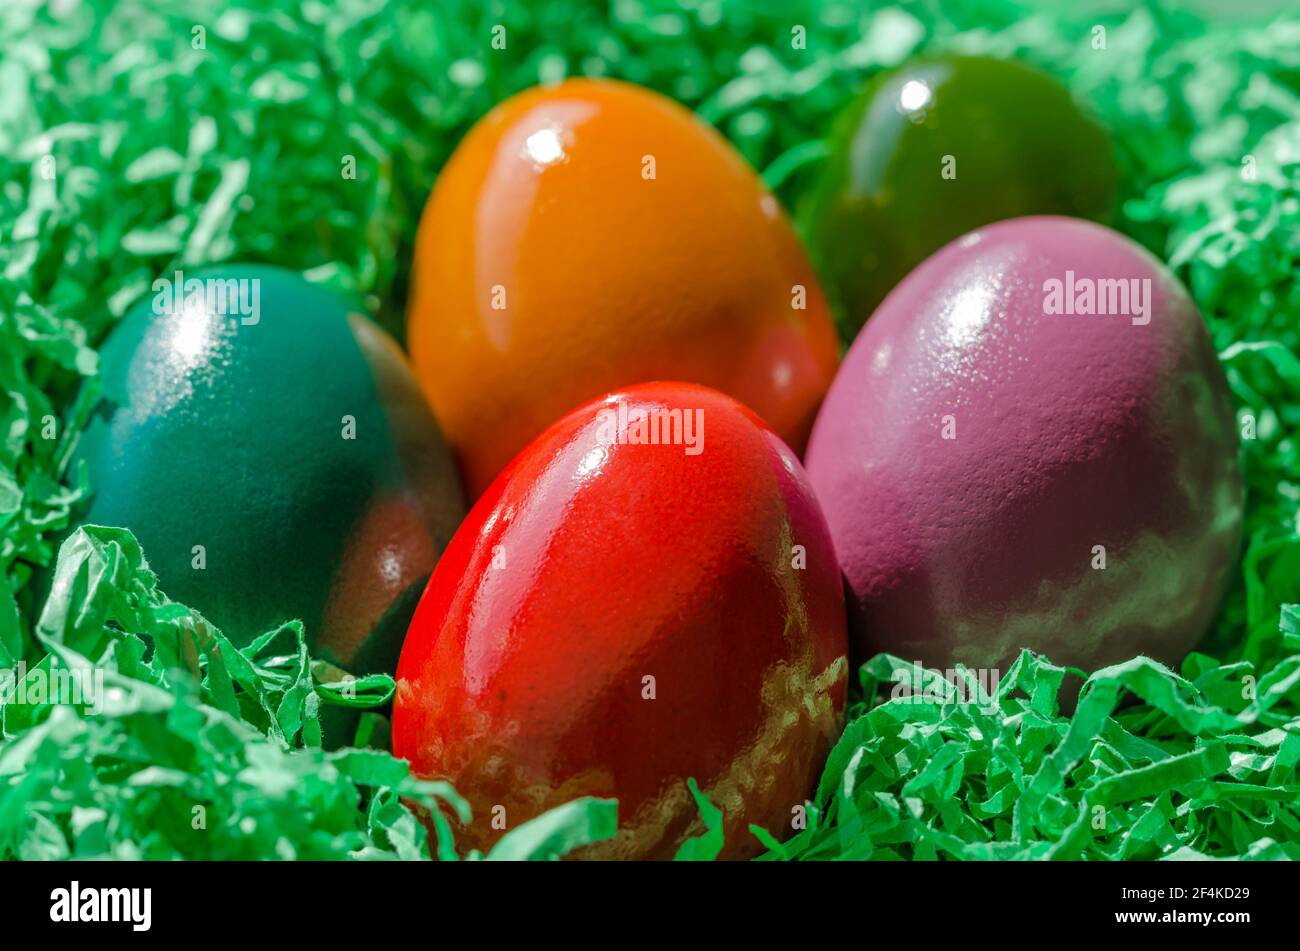 Osternest mit bunten Ostereiern. Ostereier in einem Nest angeordnet, aus grünem geschreddertem Papier. Gruppe von hart gekochten und bunt gefärbten Eiern. Stockfoto